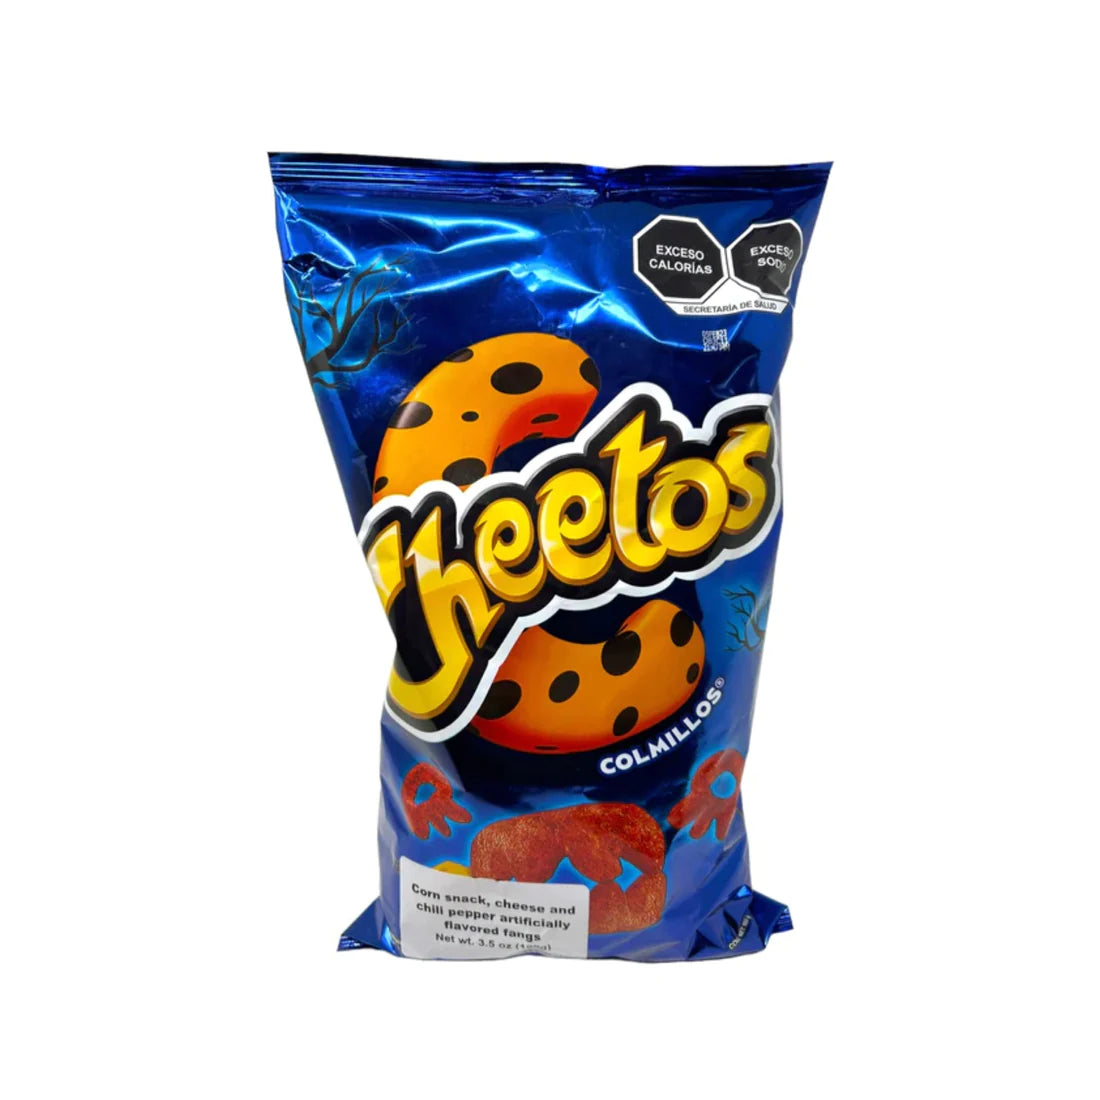 Cheetos Colmillos- Sabritas Count 19